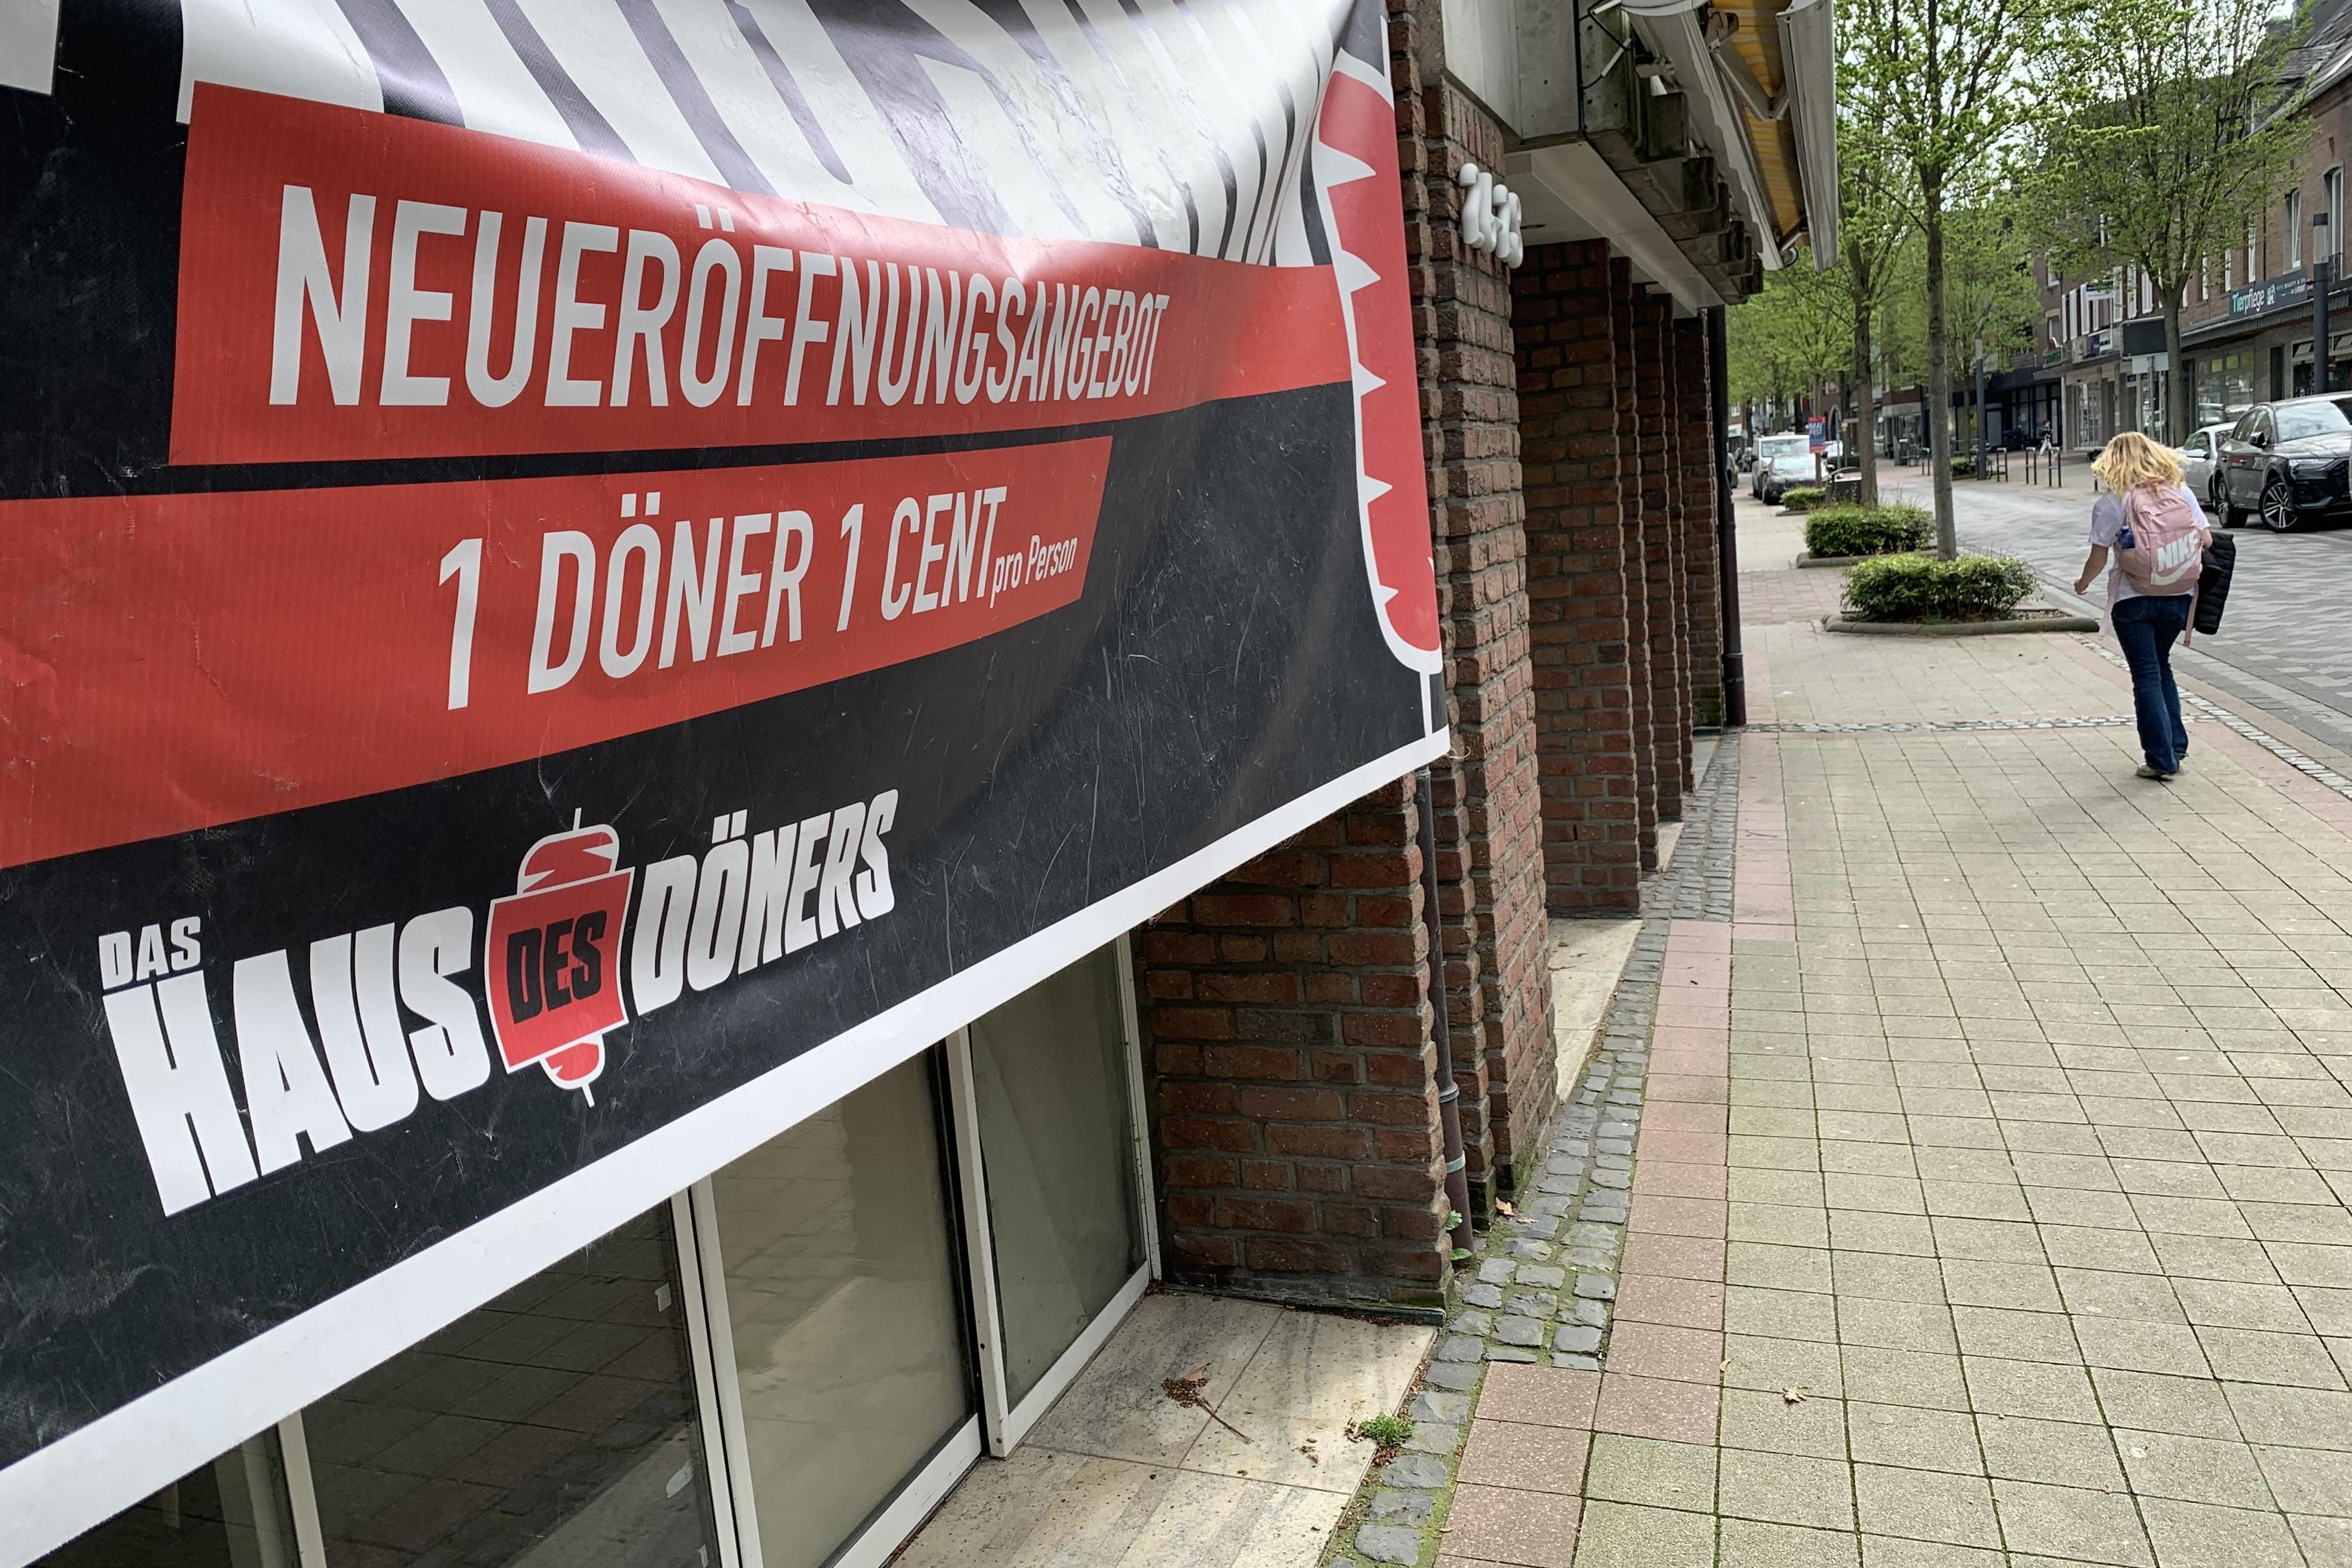 Bald auch in Heinsberg: Das "Haus des Döners" kündigt per Banner seine Eröffnung in der Kreisstadt an.